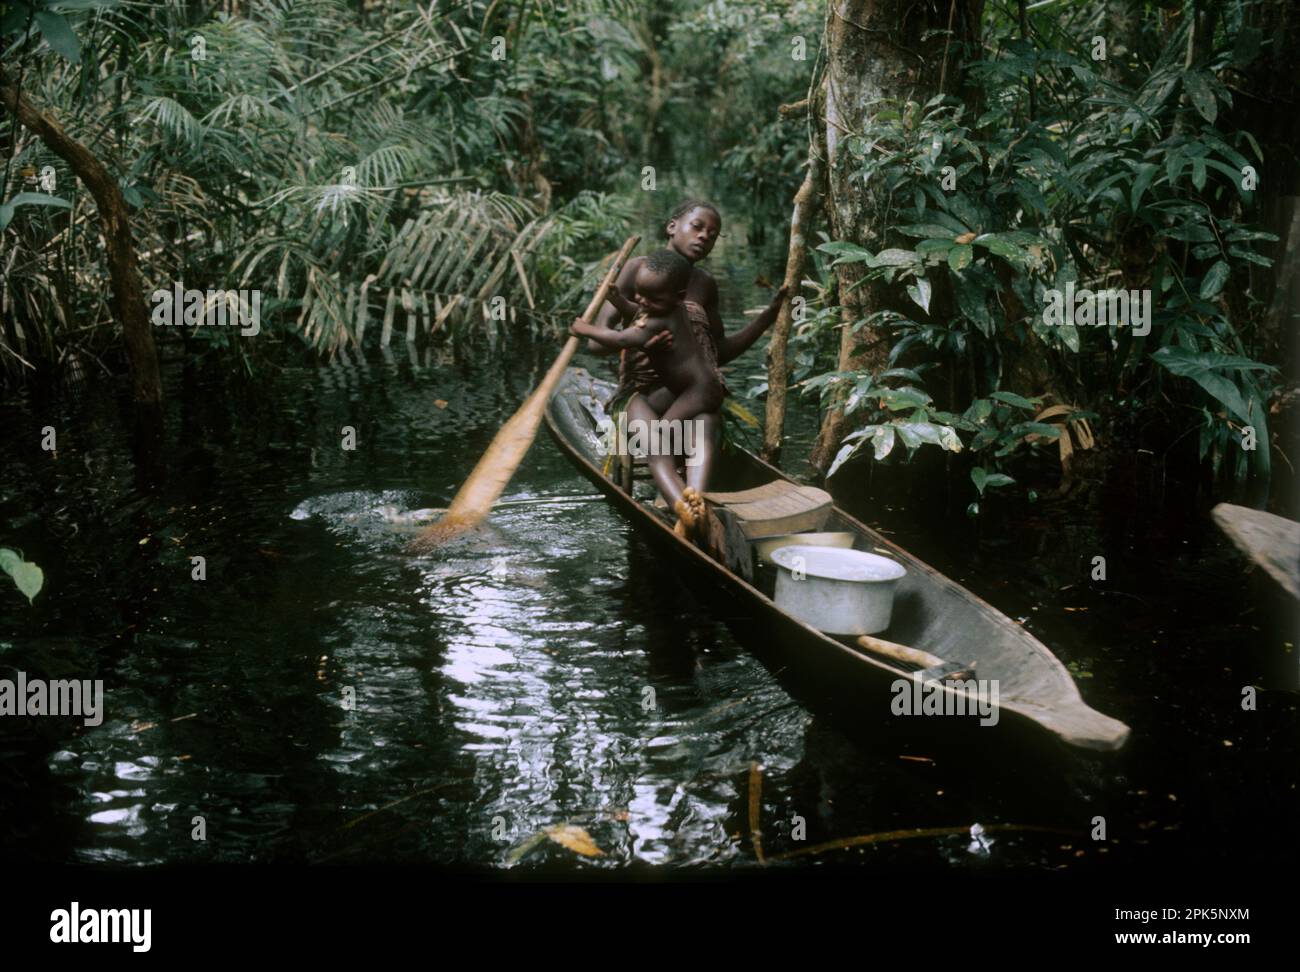 Afrique, République démocratique du Congo, région des îles de la rivière Ngiri, groupe ethnique Libinza : fille avec bébé apprenant à pagayer en canoë dans la forêt marécageuse. Banque D'Images